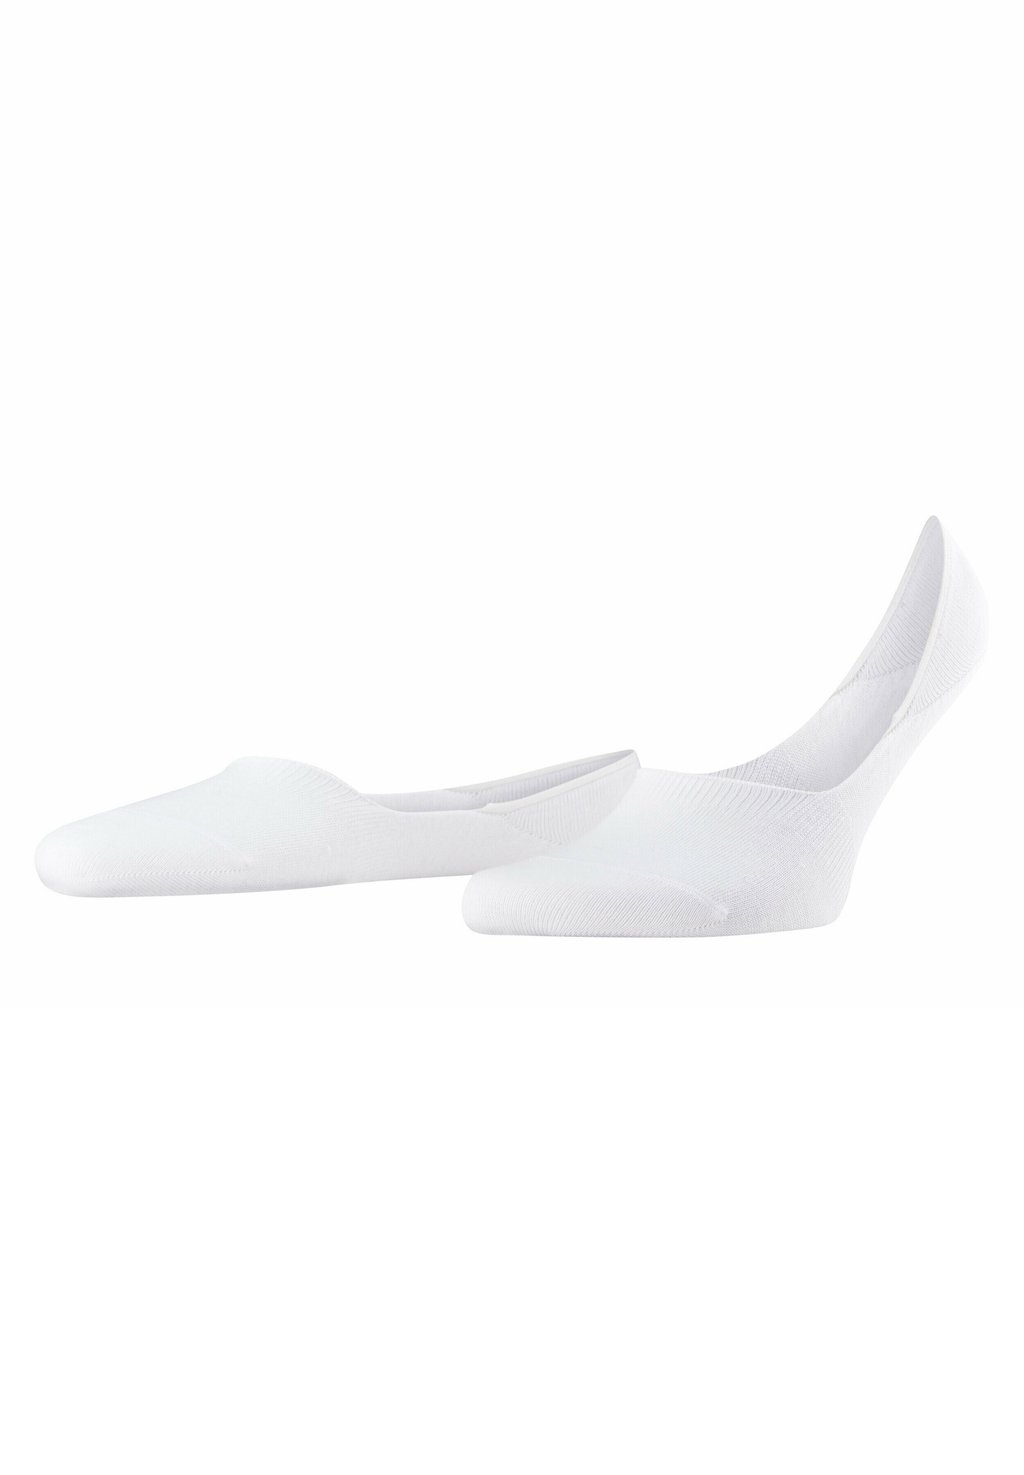 Носки STEP MEDIUM CUT HIDDEN IN SHOE FALKE, белые носки falke füßlinge step medium cut белый